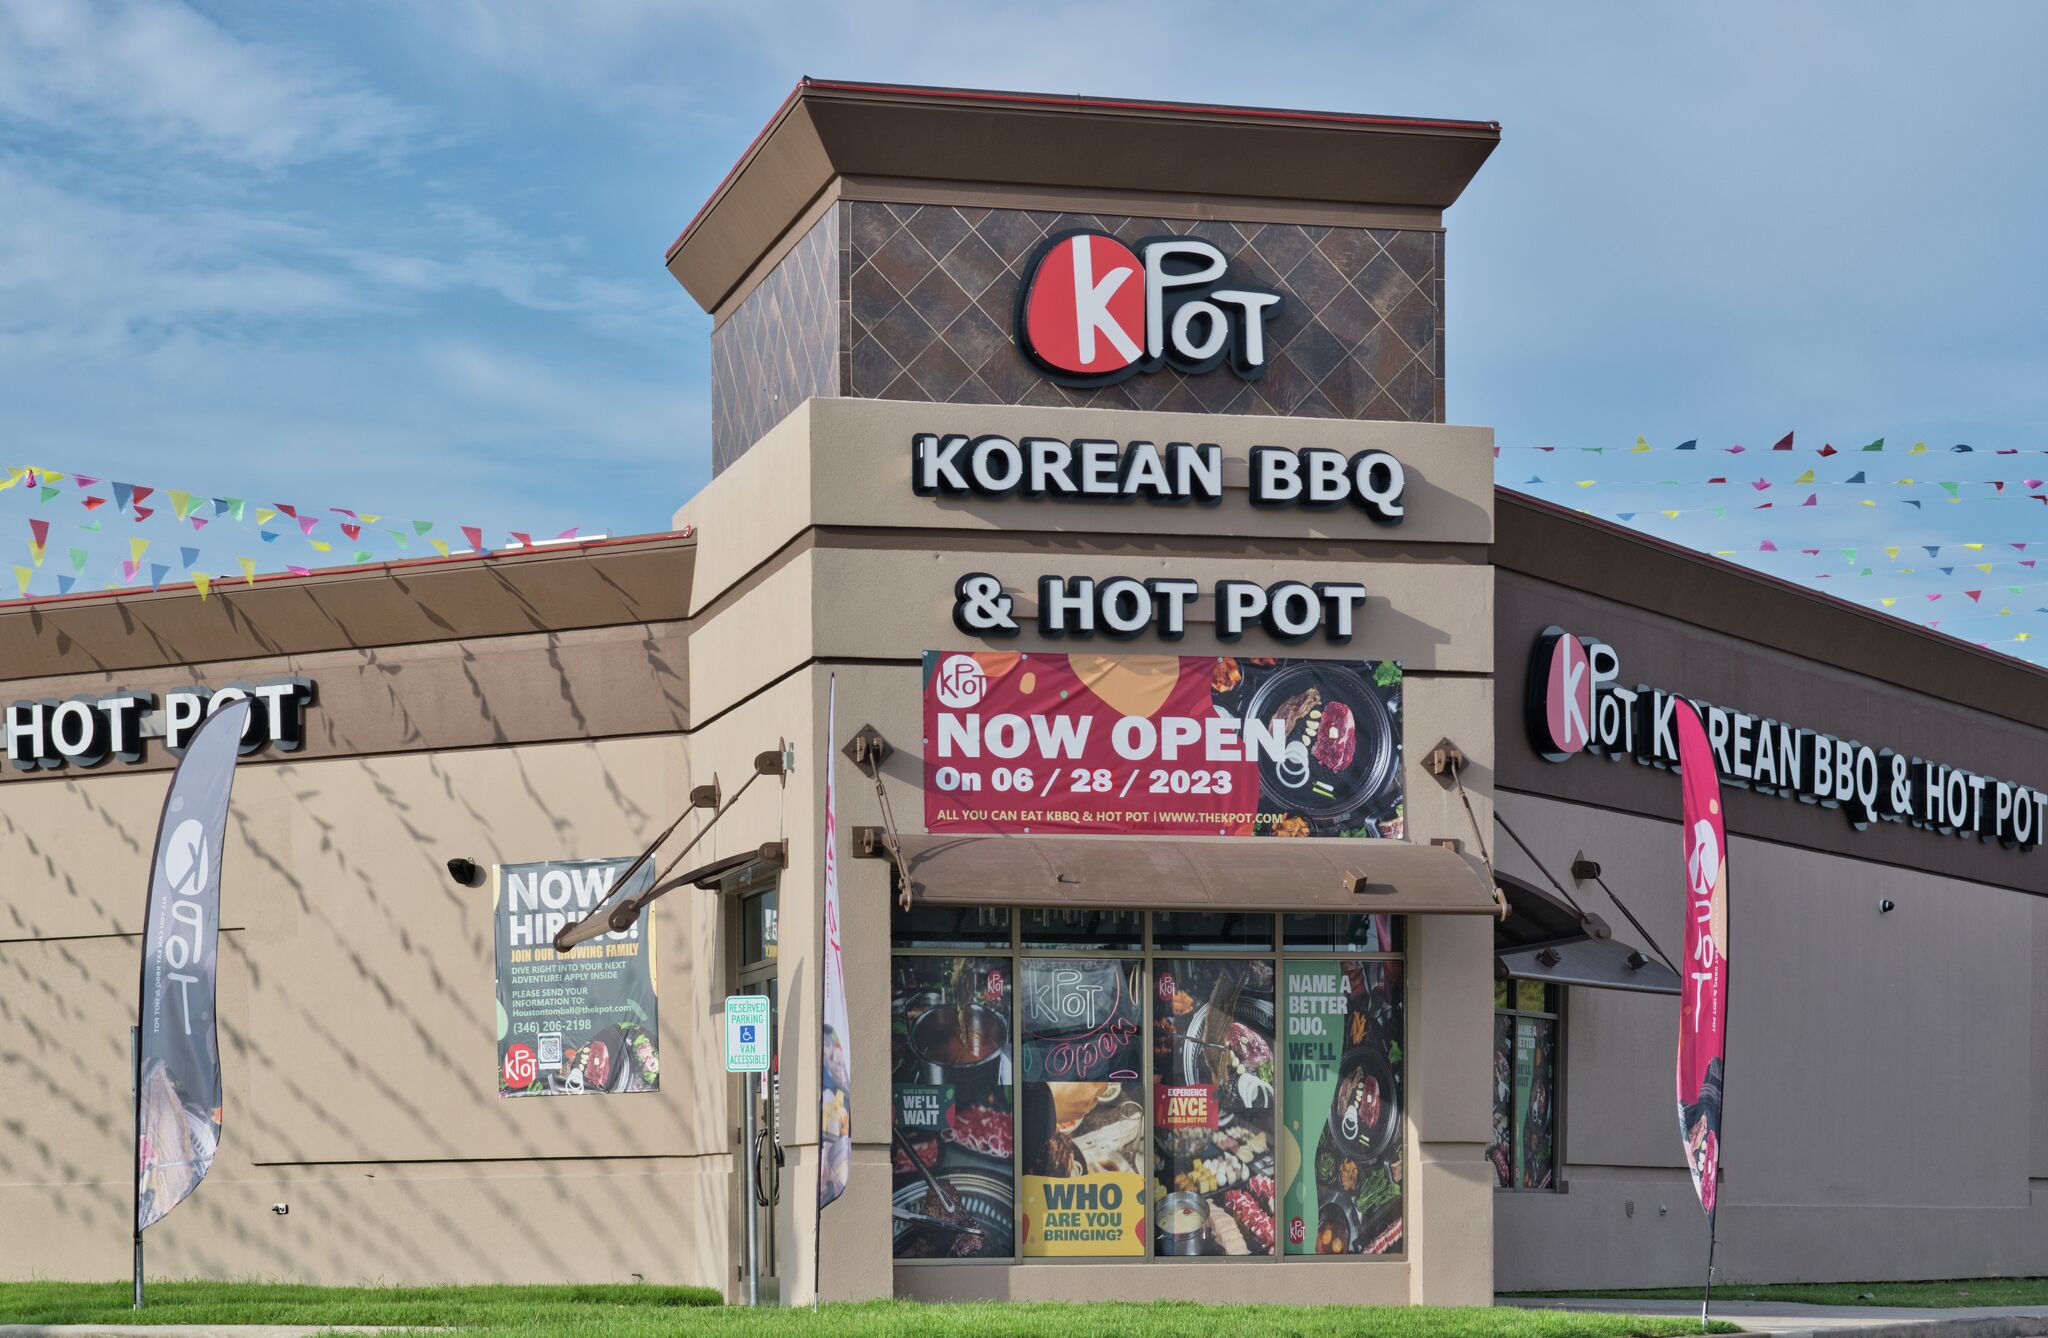 KPot Korean BBQ & Hot Pot debuts in San Antonio, San Antonio